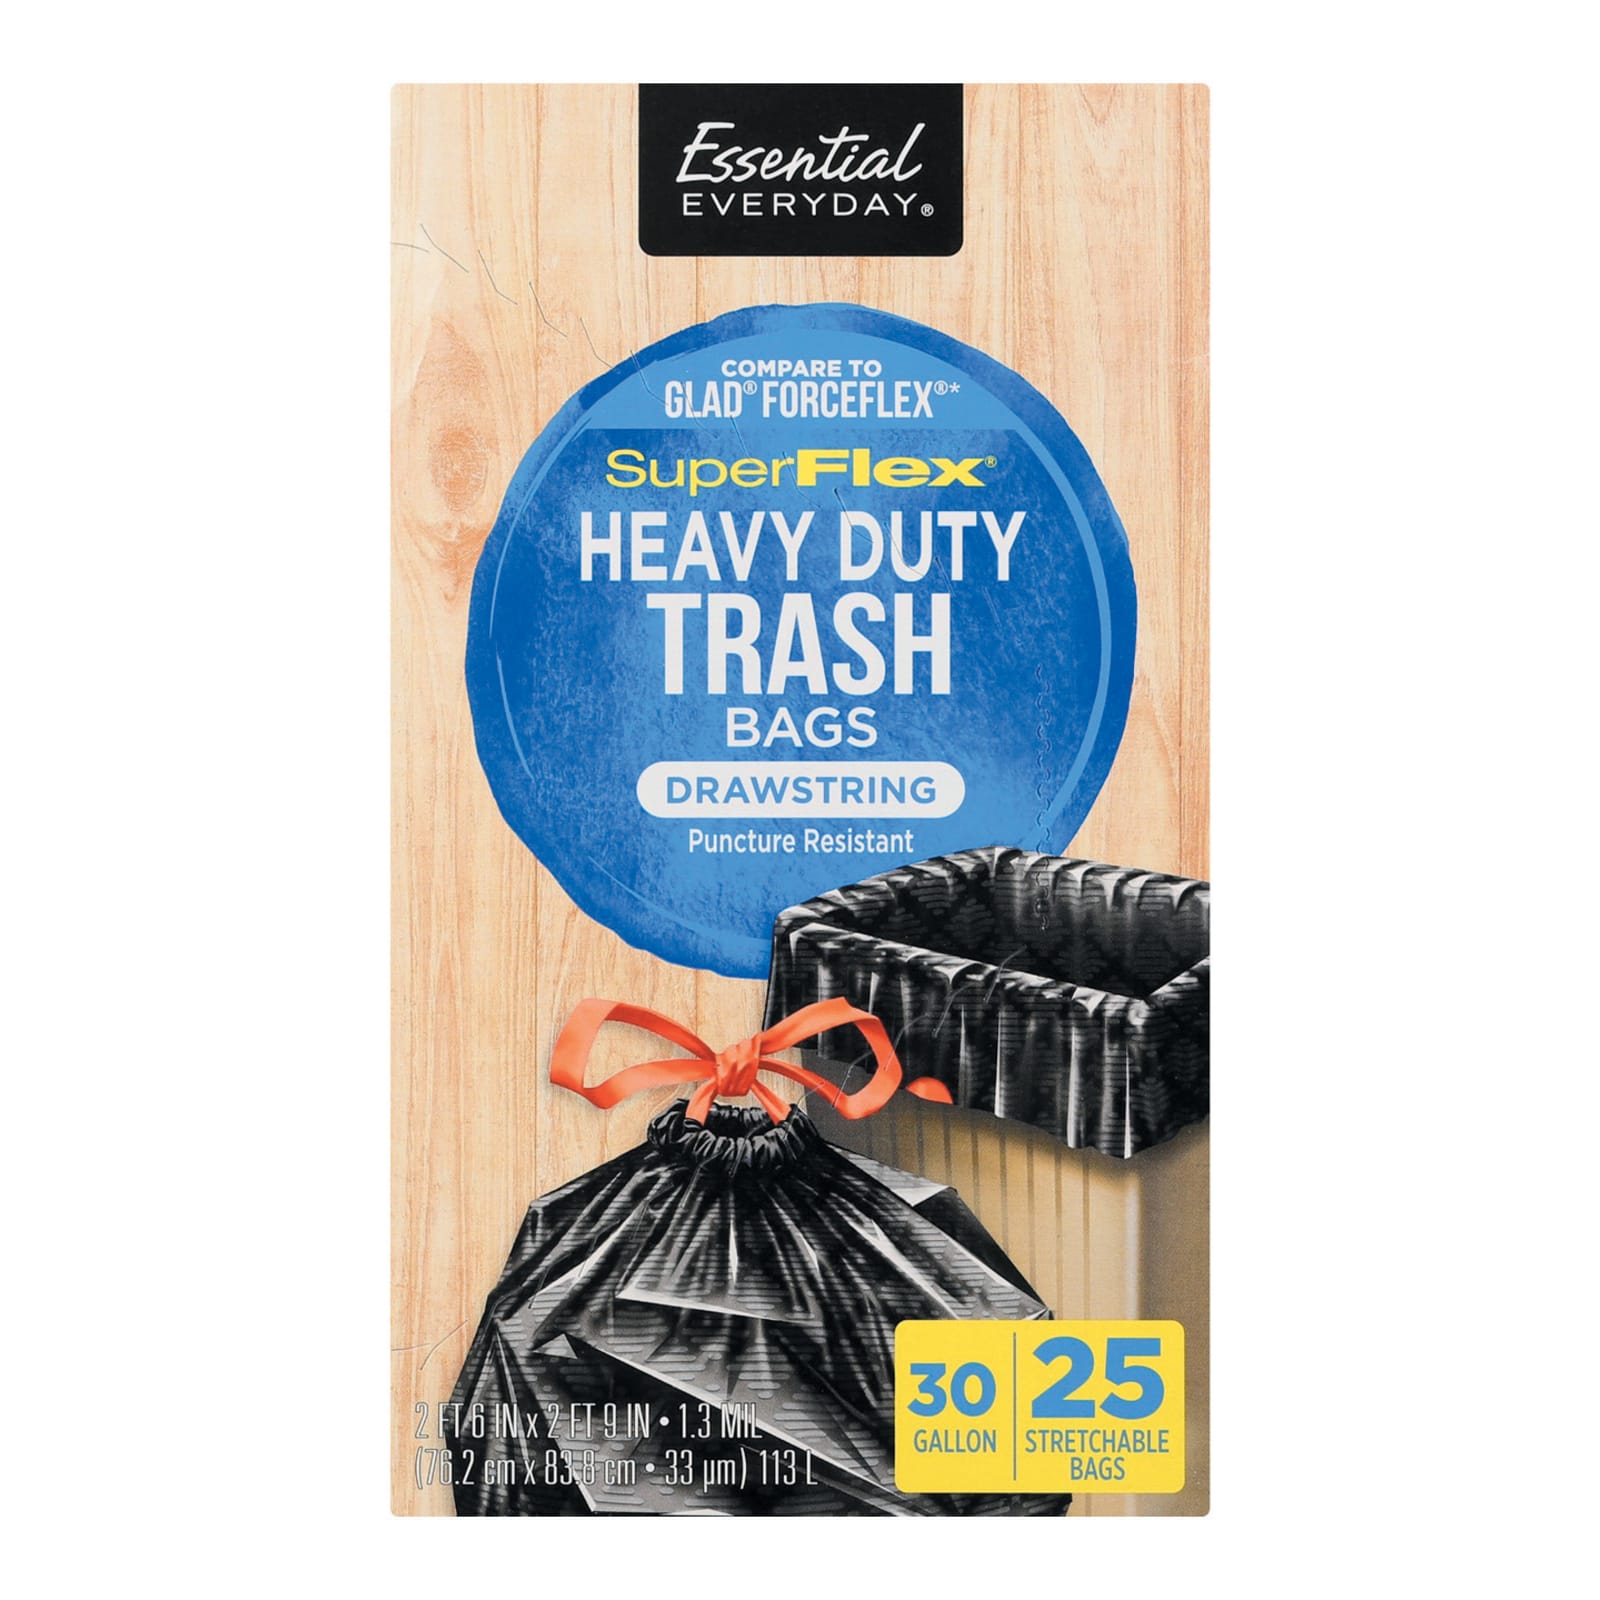 30 Gal Heavy Duty SuperFlex Trash Bags - 25 ct by Essential EVERYDAY at  Fleet Farm